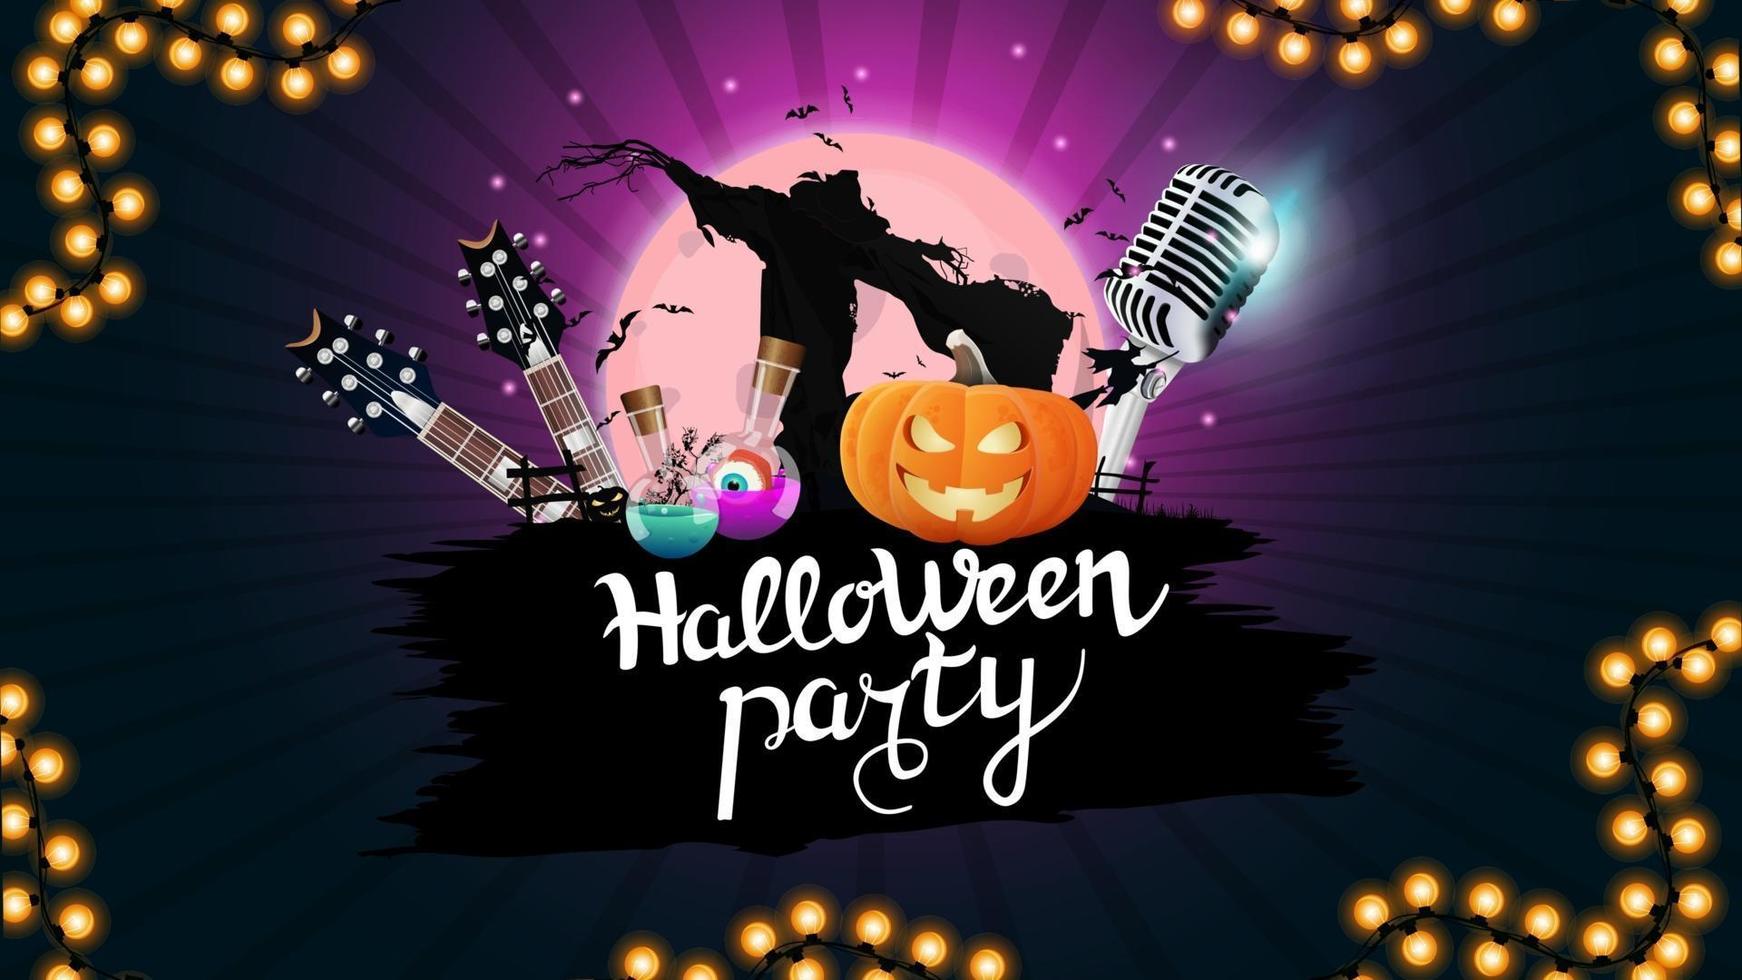 fiesta de halloween, banner de invitación a fiesta creativa con micrófono, guitarras, calabazas y espantapájaros. plantilla morada para cartel de fiesta de halloween vector